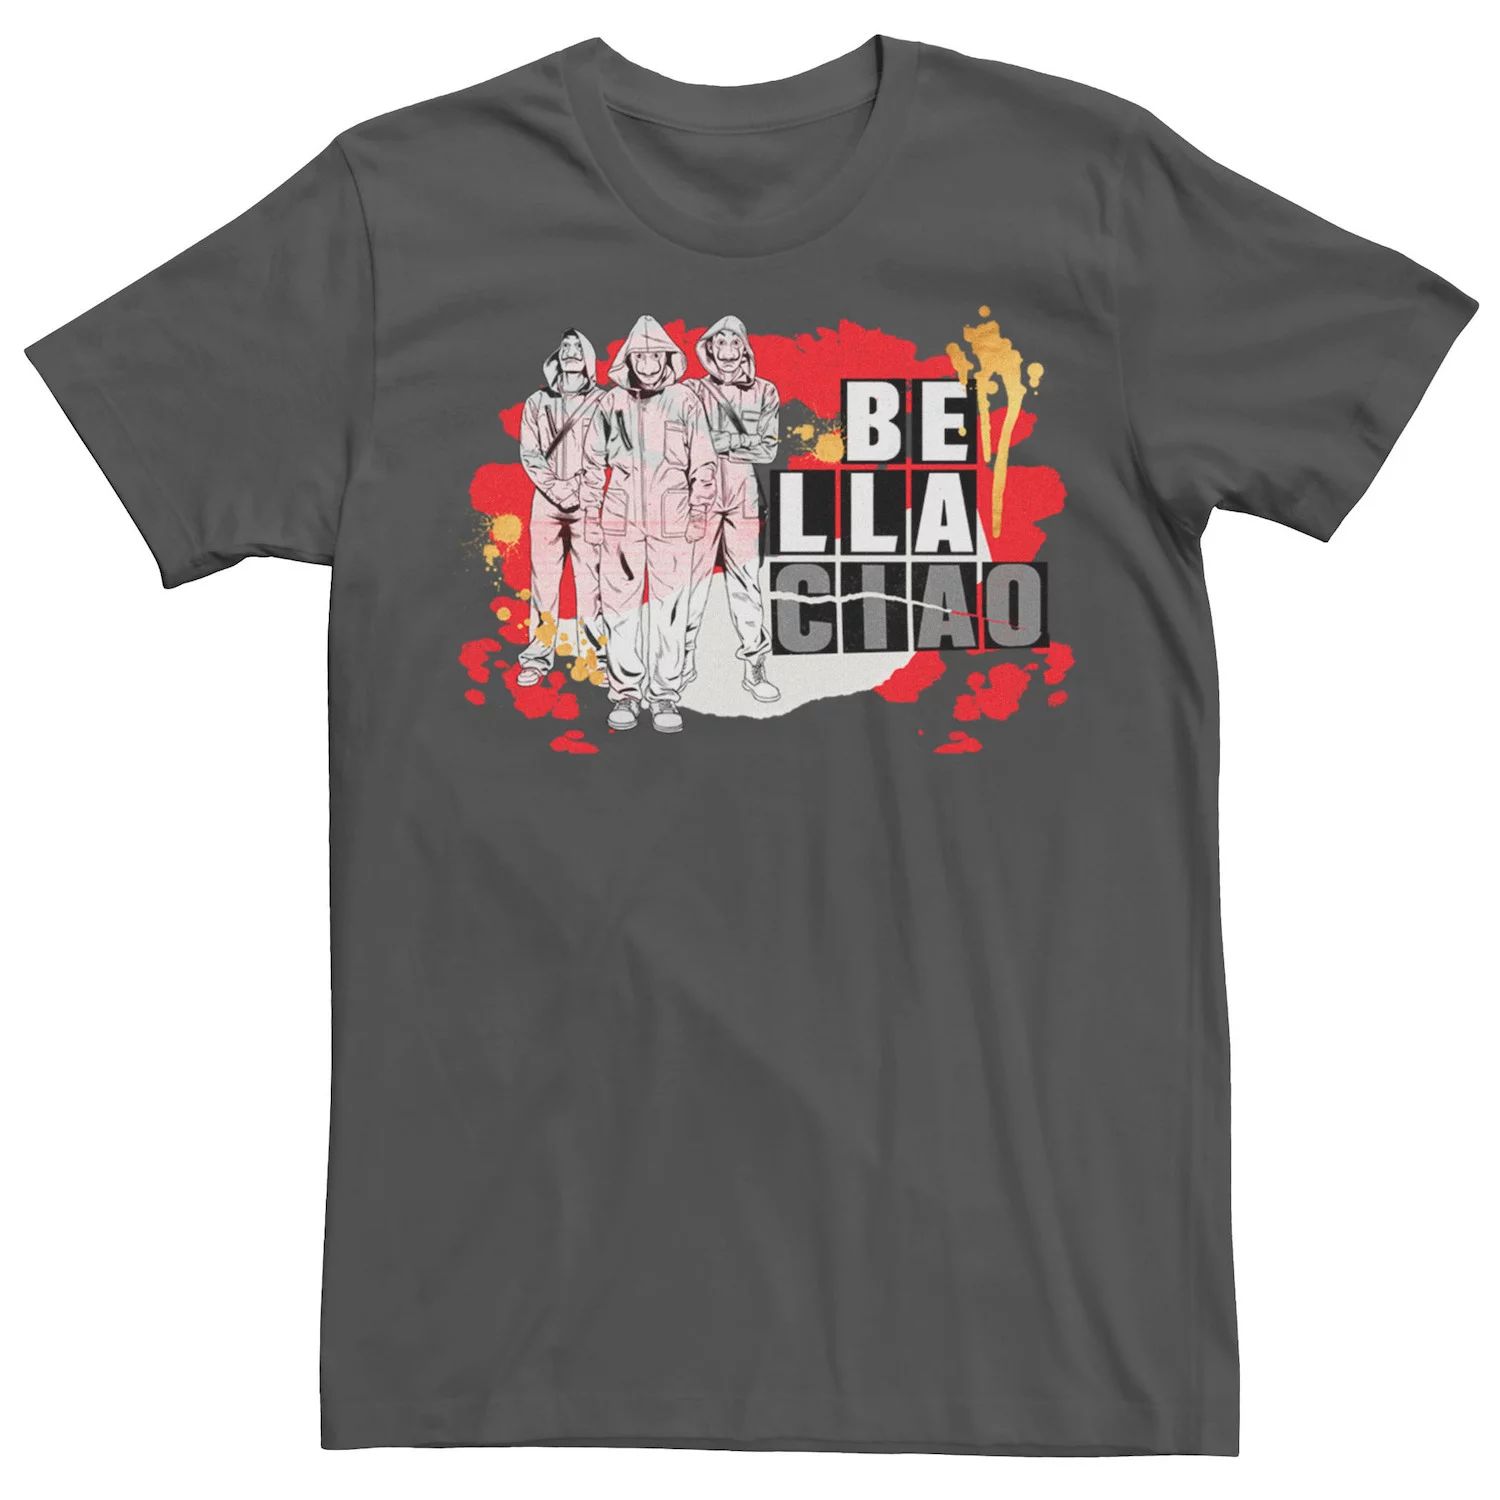 Мужская футболка Netflix La Casa De Papel Bella Ciao с брызгами краски Licensed Character мужская футболка с коротким рукавом la casa de papel bella ciao zeppelin group в маске fifth sun черный